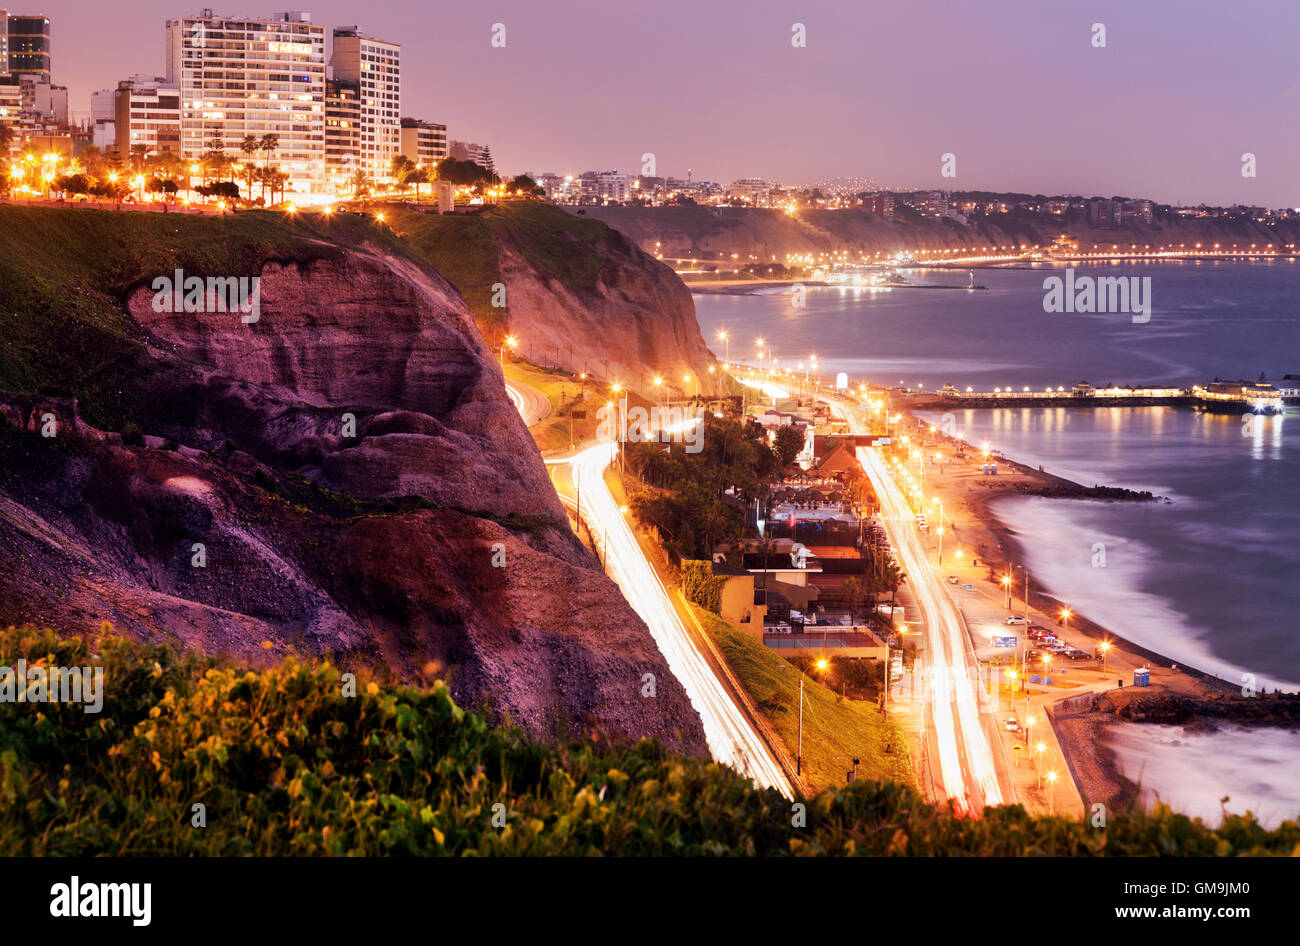 Pérou, Lima, Miraflores, falaises de Miraflores au coucher du soleil Banque D'Images